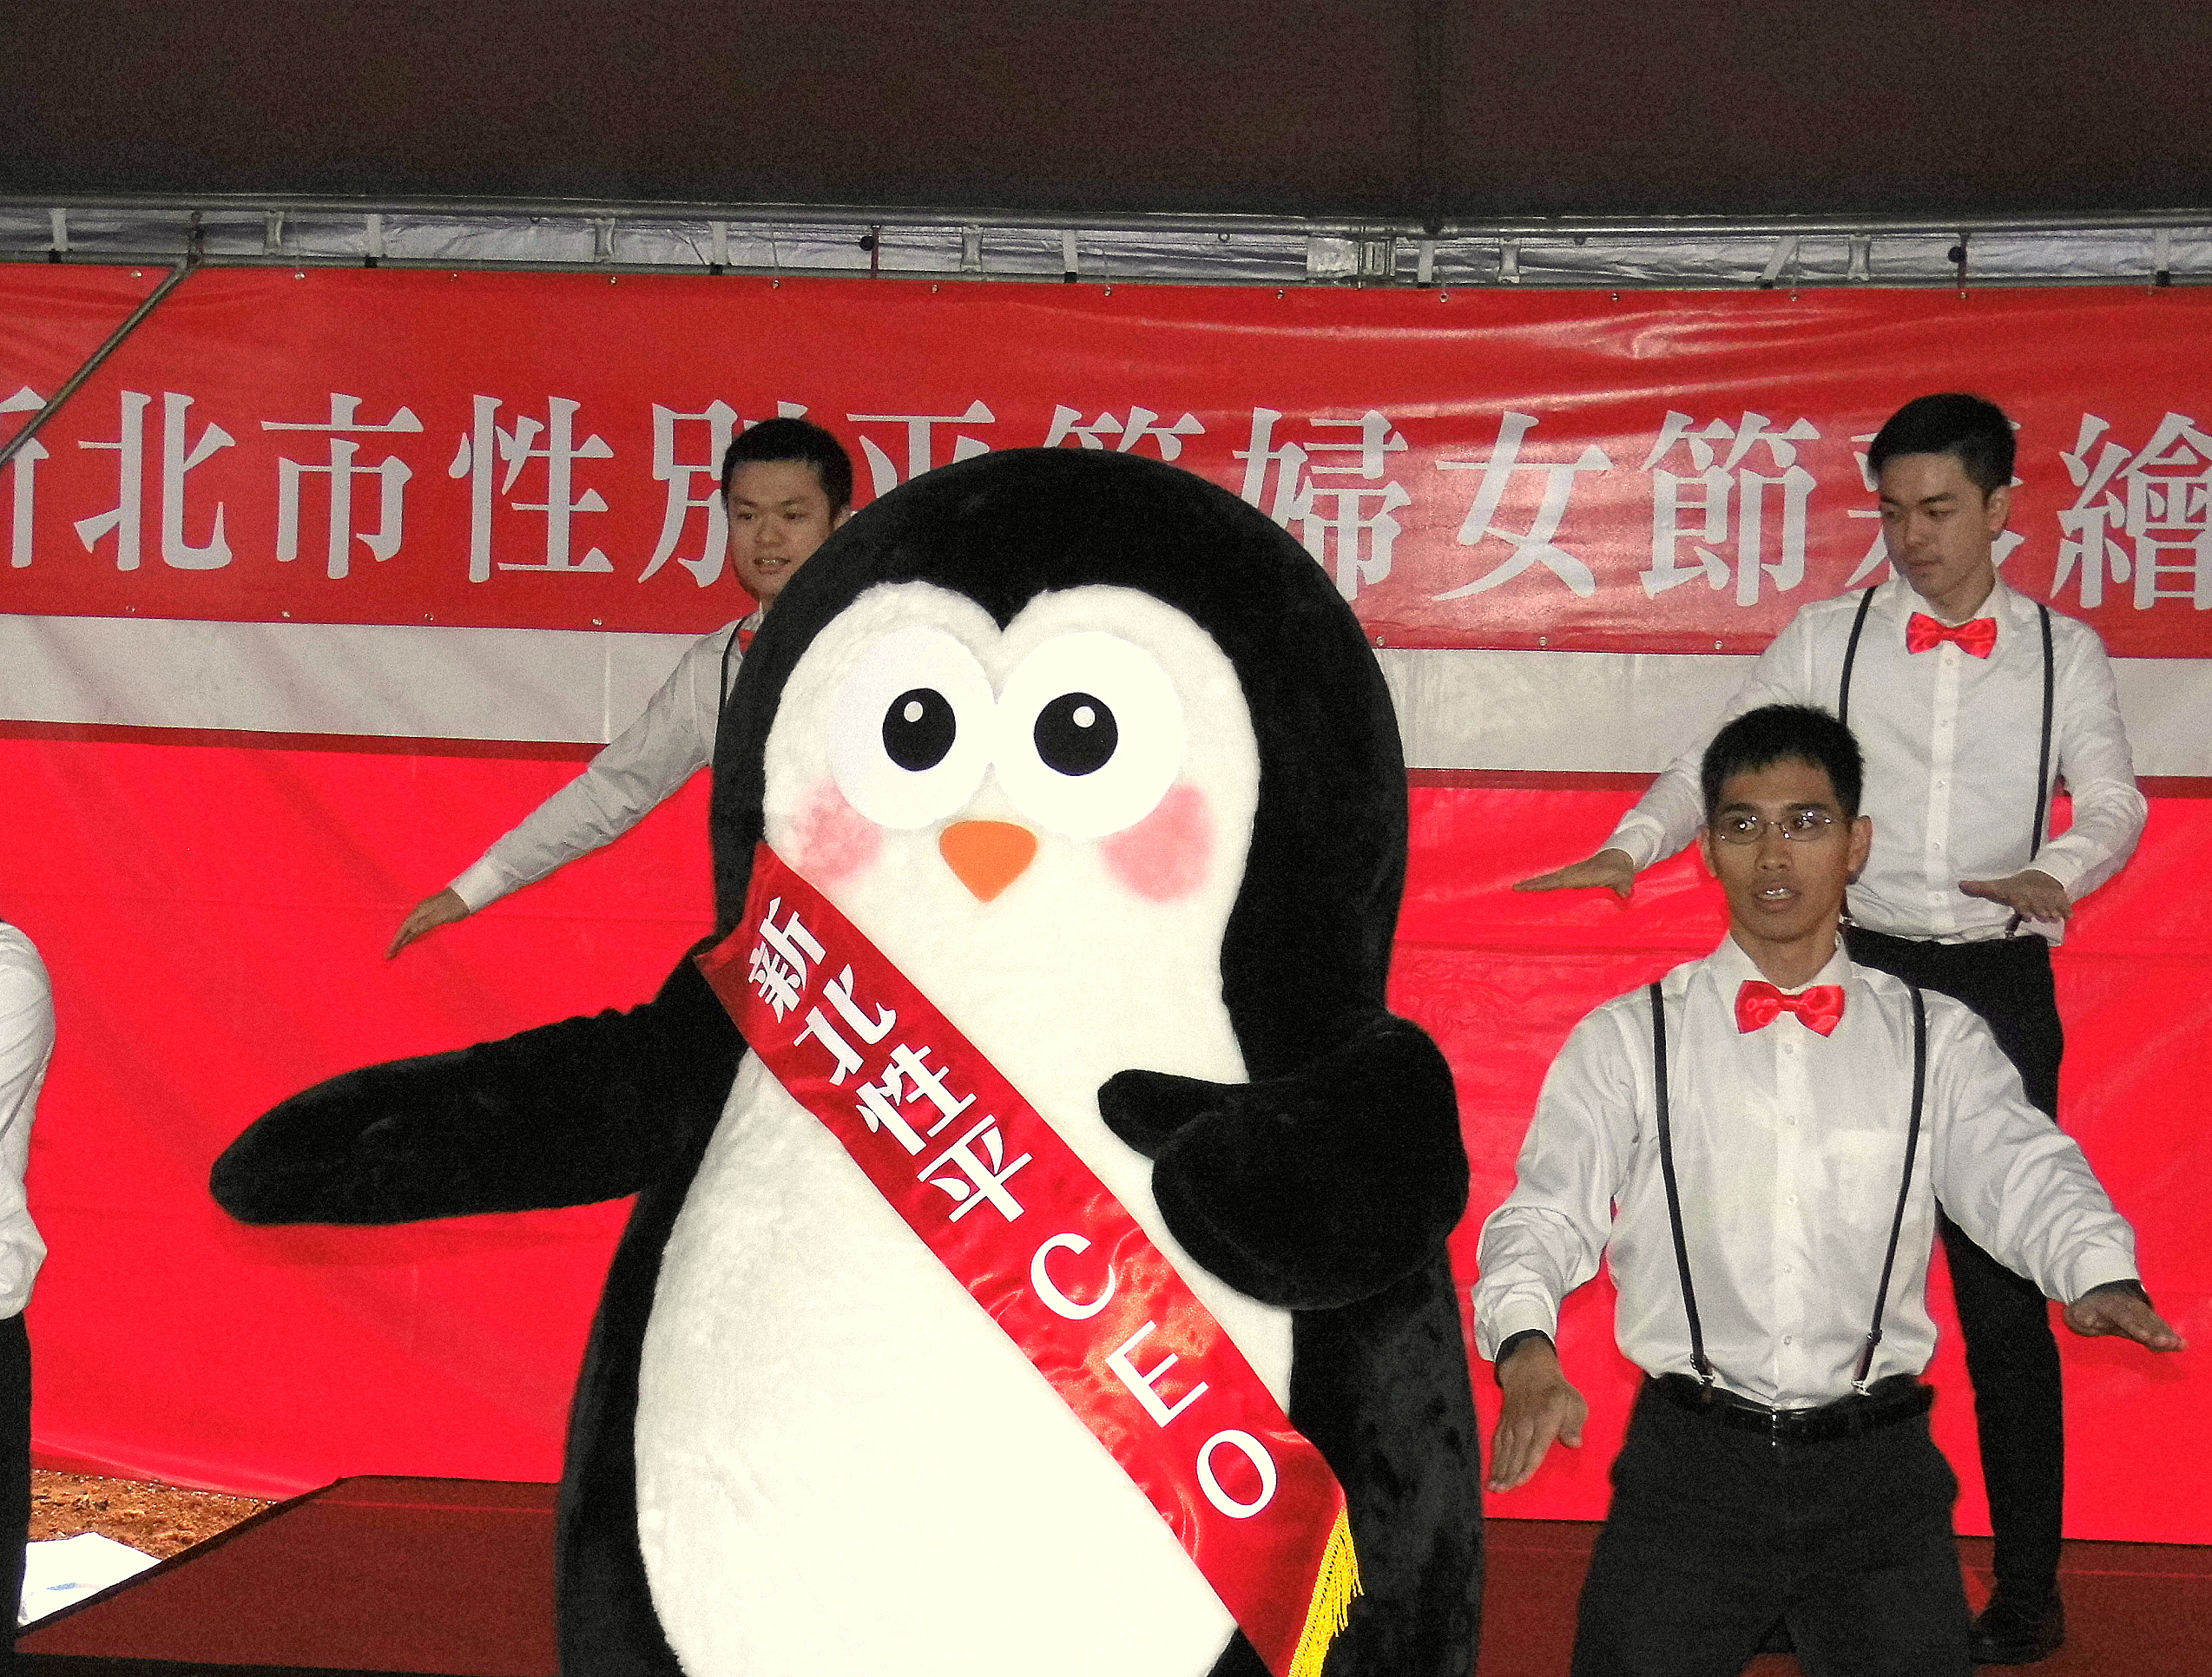 新北市性平吉祥物「企鵝暖爸」帶動彩繪現場氣氛